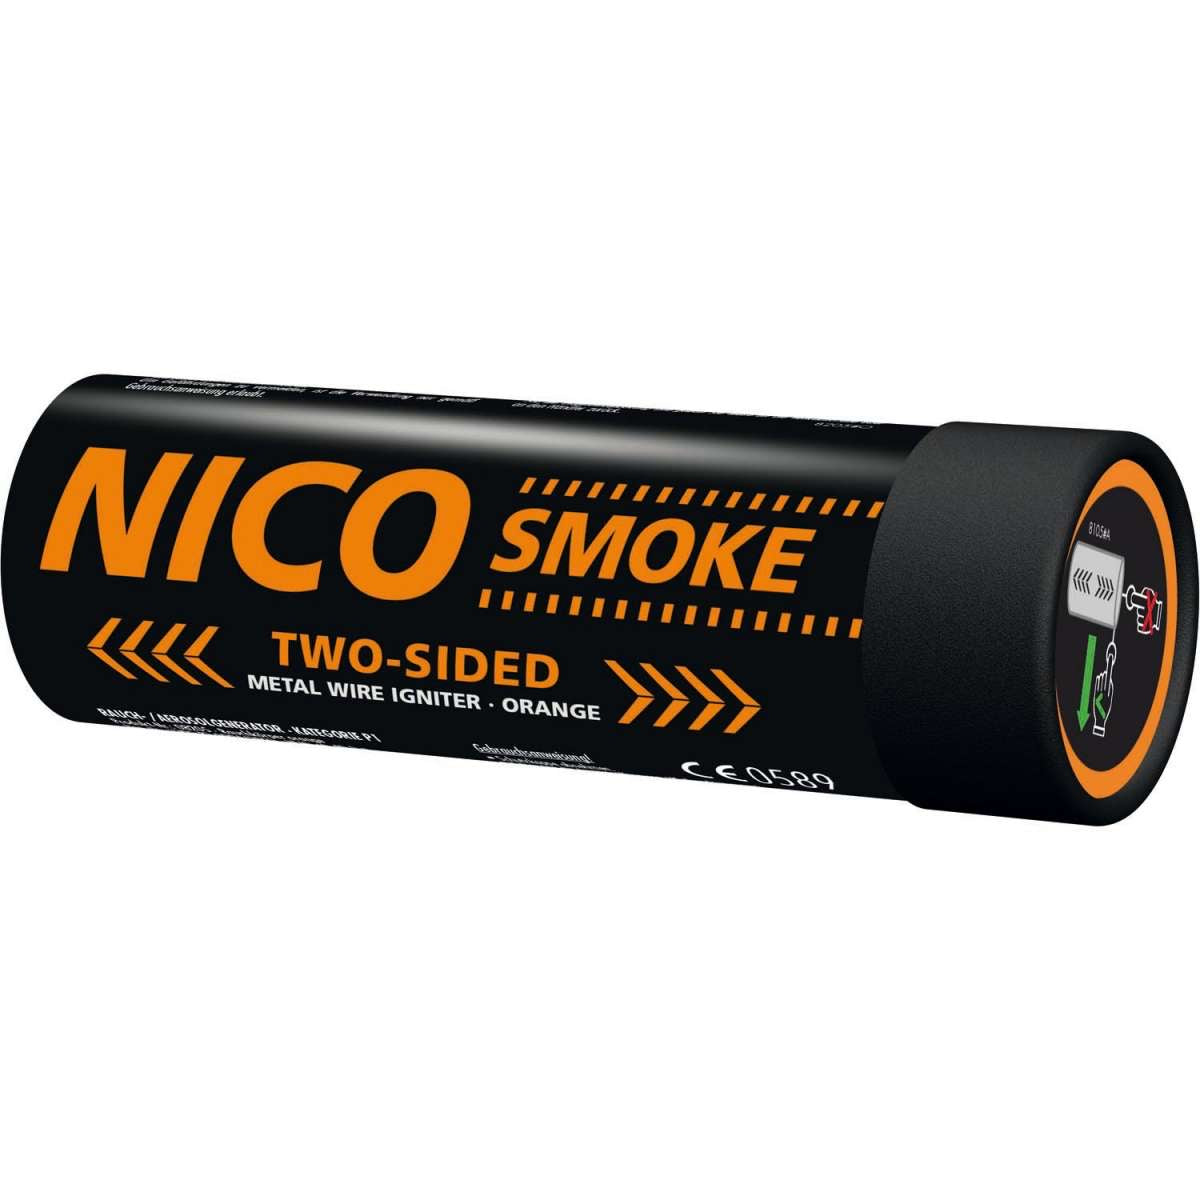 NICO SMOKE Zweiseitig 50 Sekunden